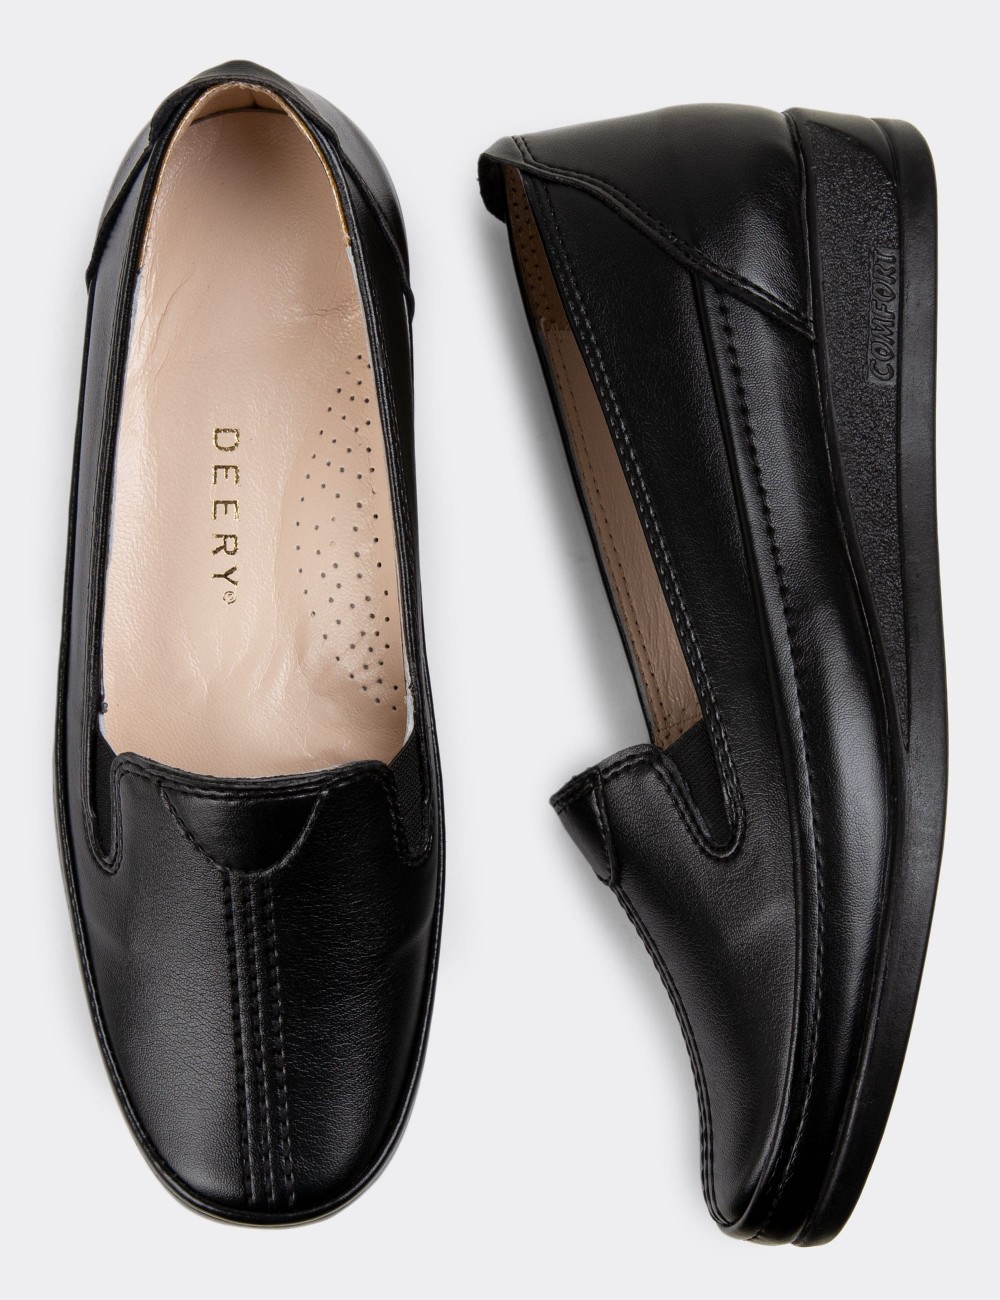 Black Loafers Shoes - K0145ZSYHC01